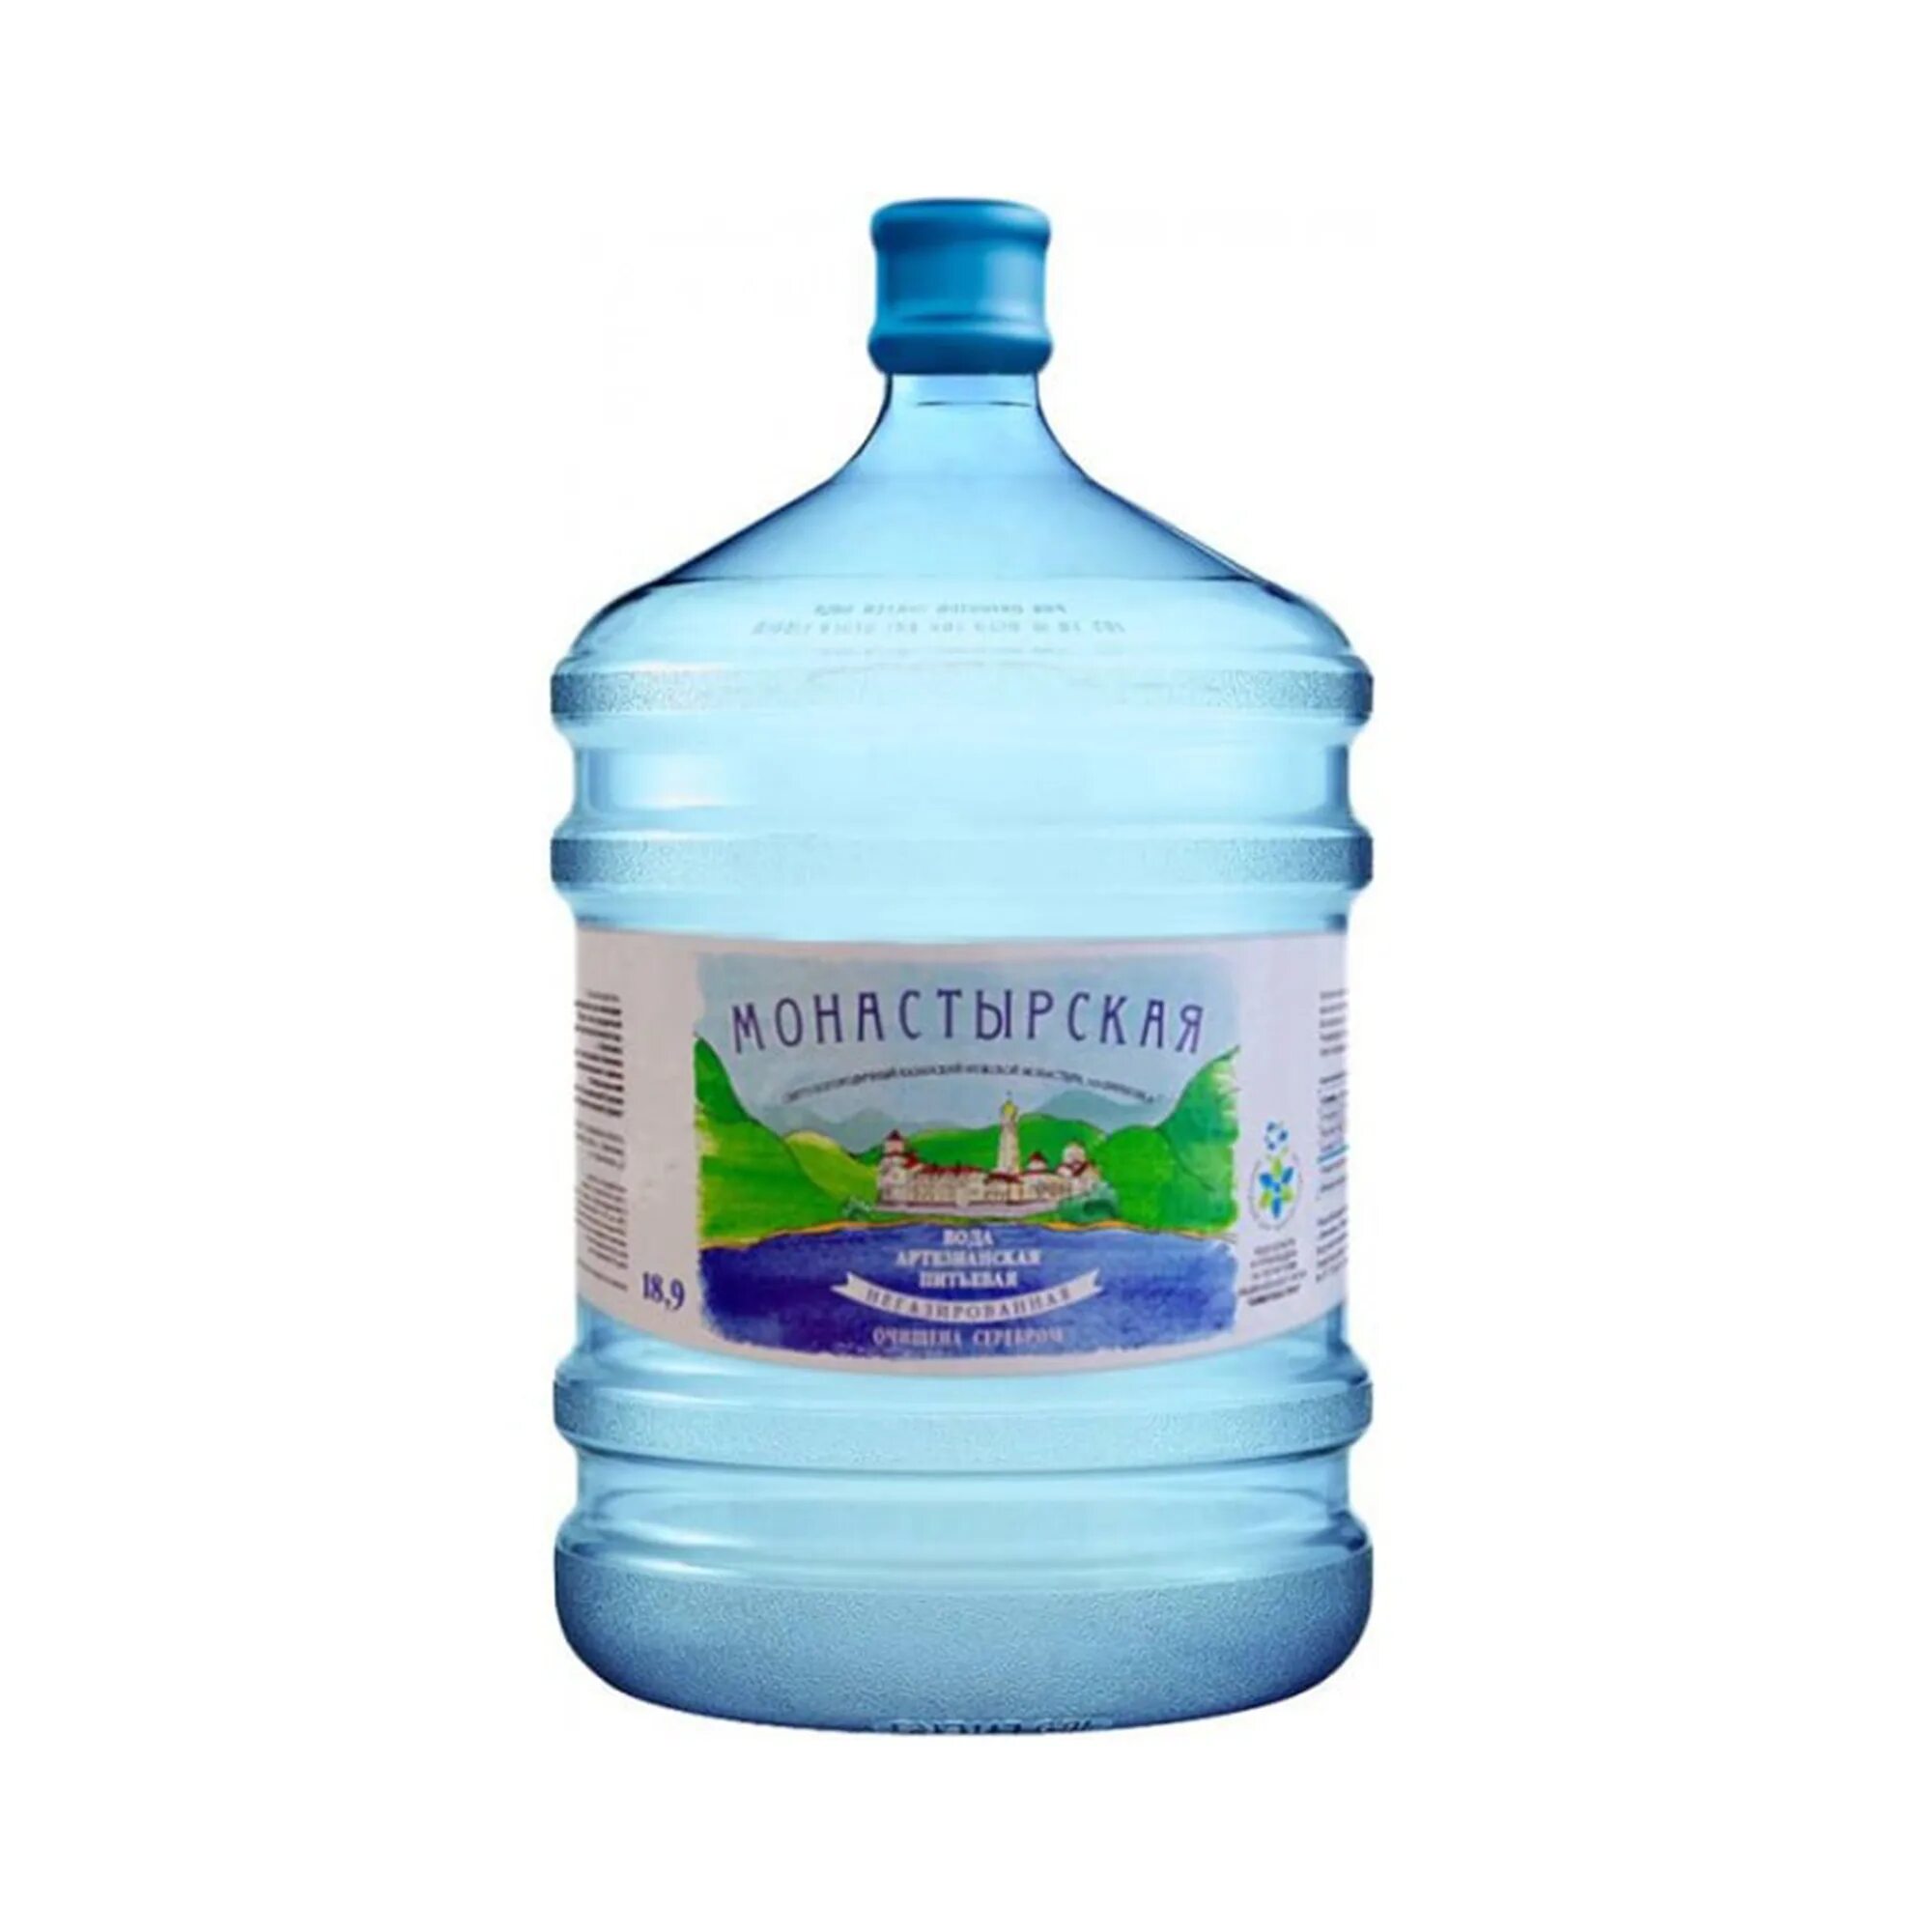 Заказ воды владивосток. Вода Меллер 19 литров. Артезианская вода 19 литров. Монастырская вода.